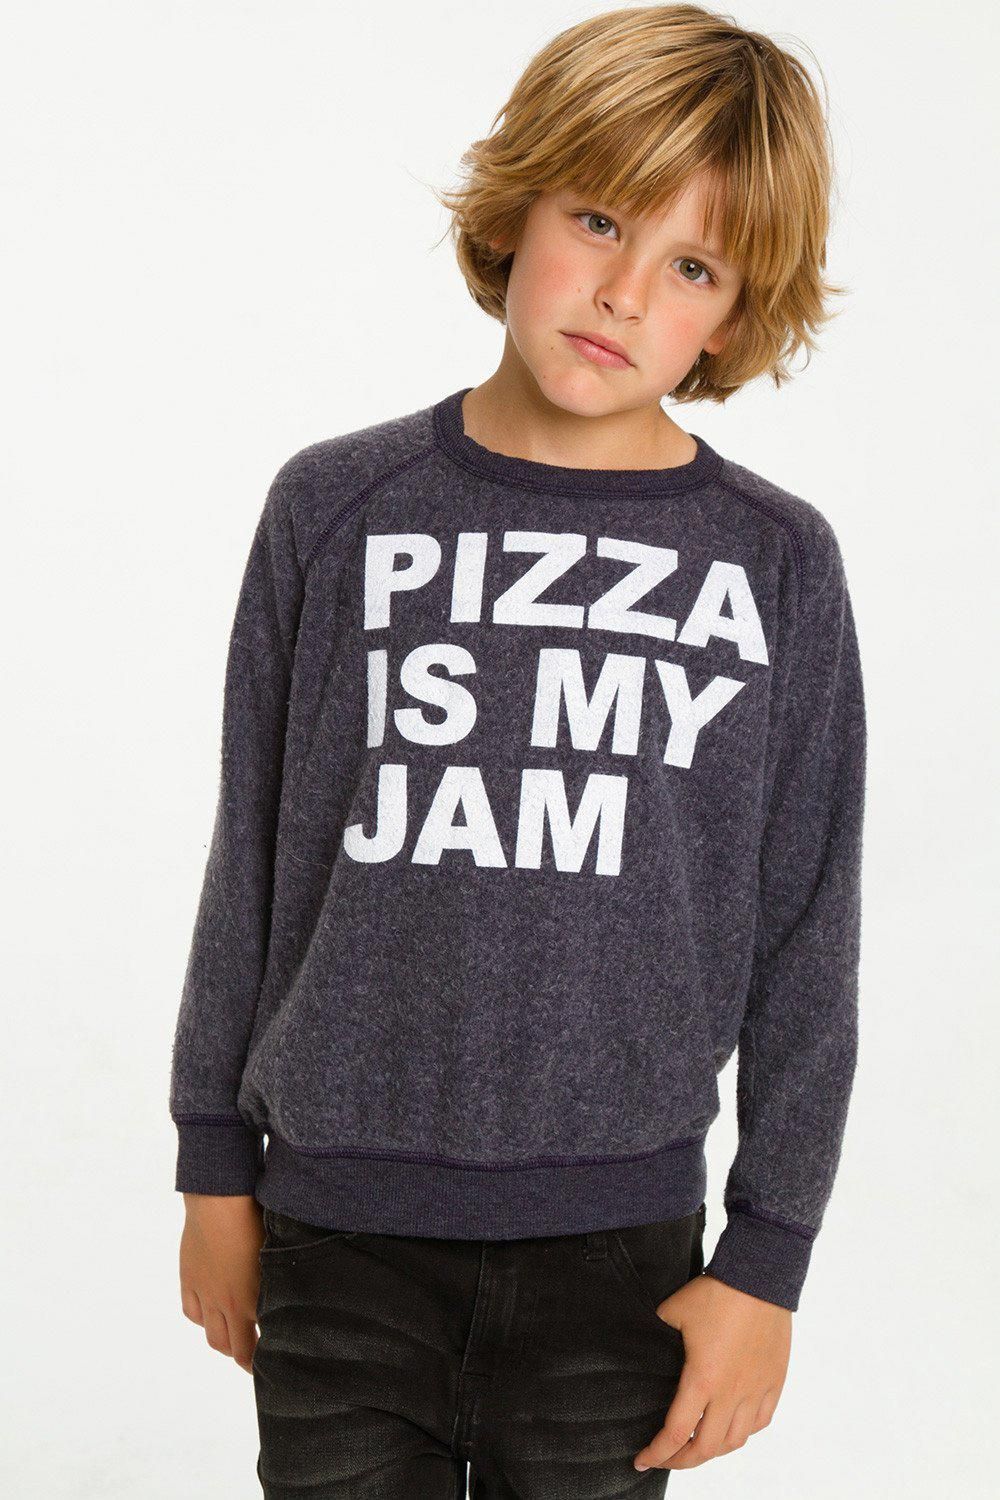 PIZZA IS MY JAM - PIZZA IS MY JAM -   16 style Boy hair ideas